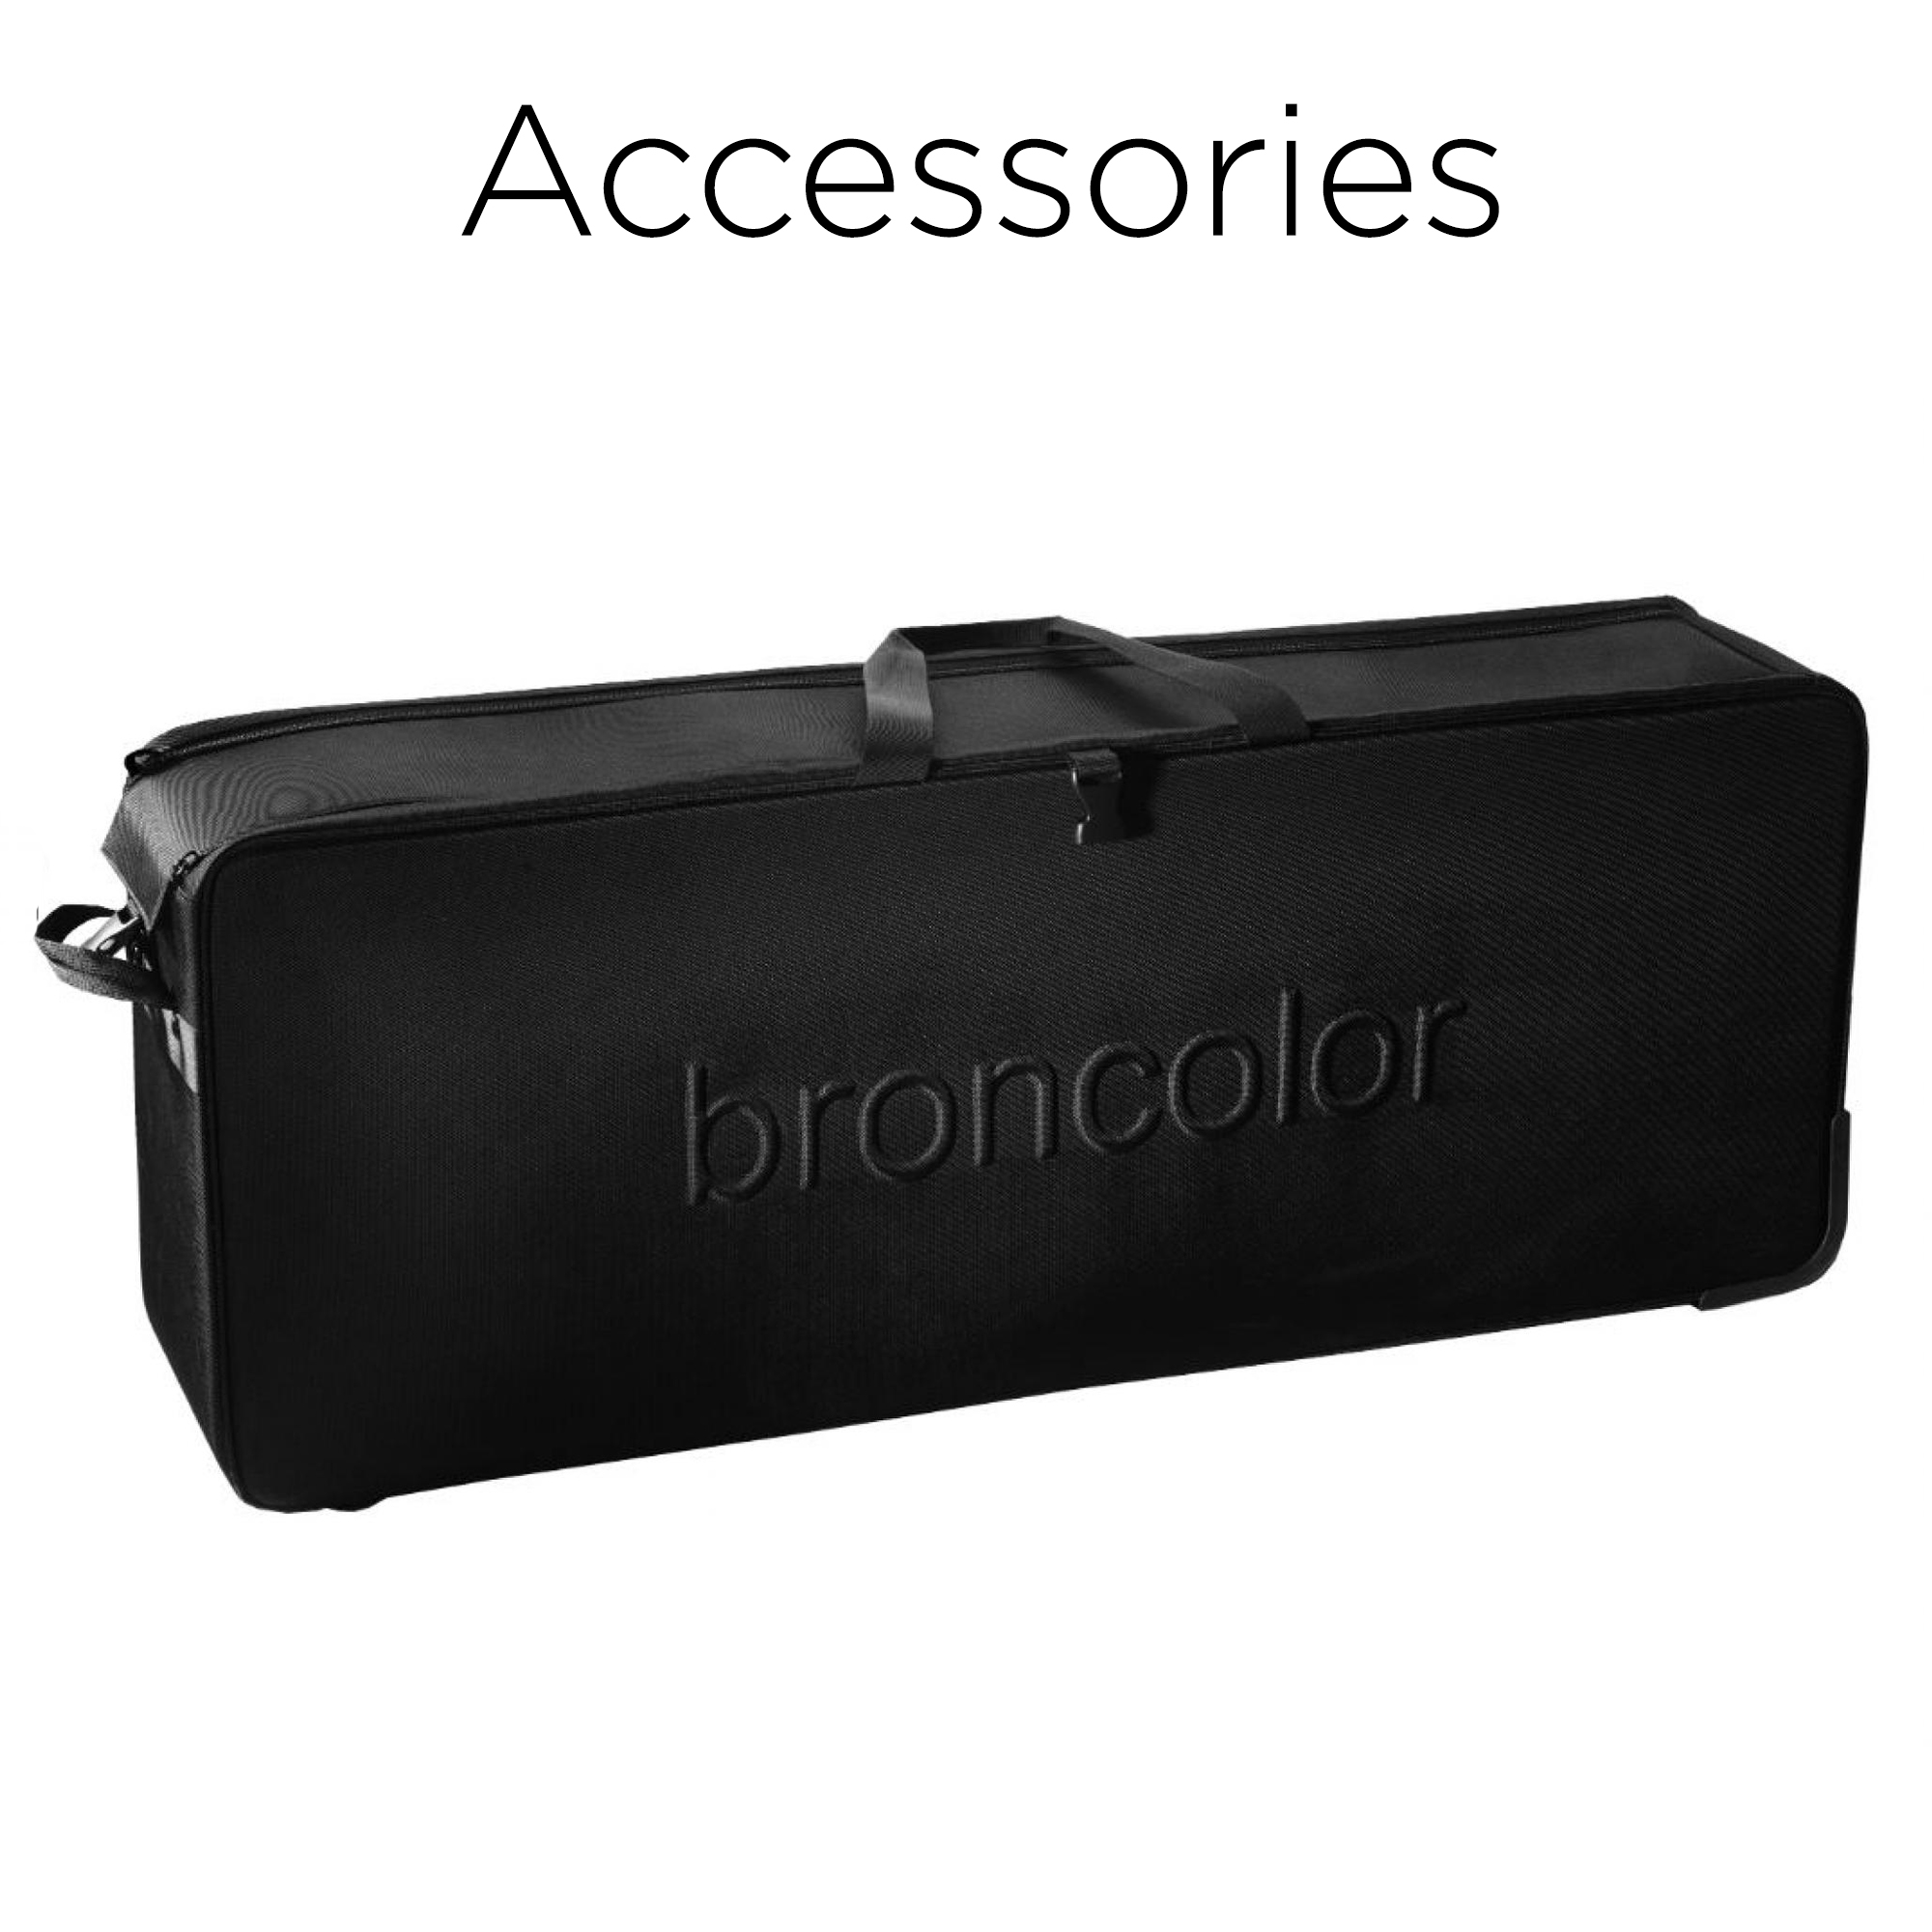 AccessoriesBron.jpg